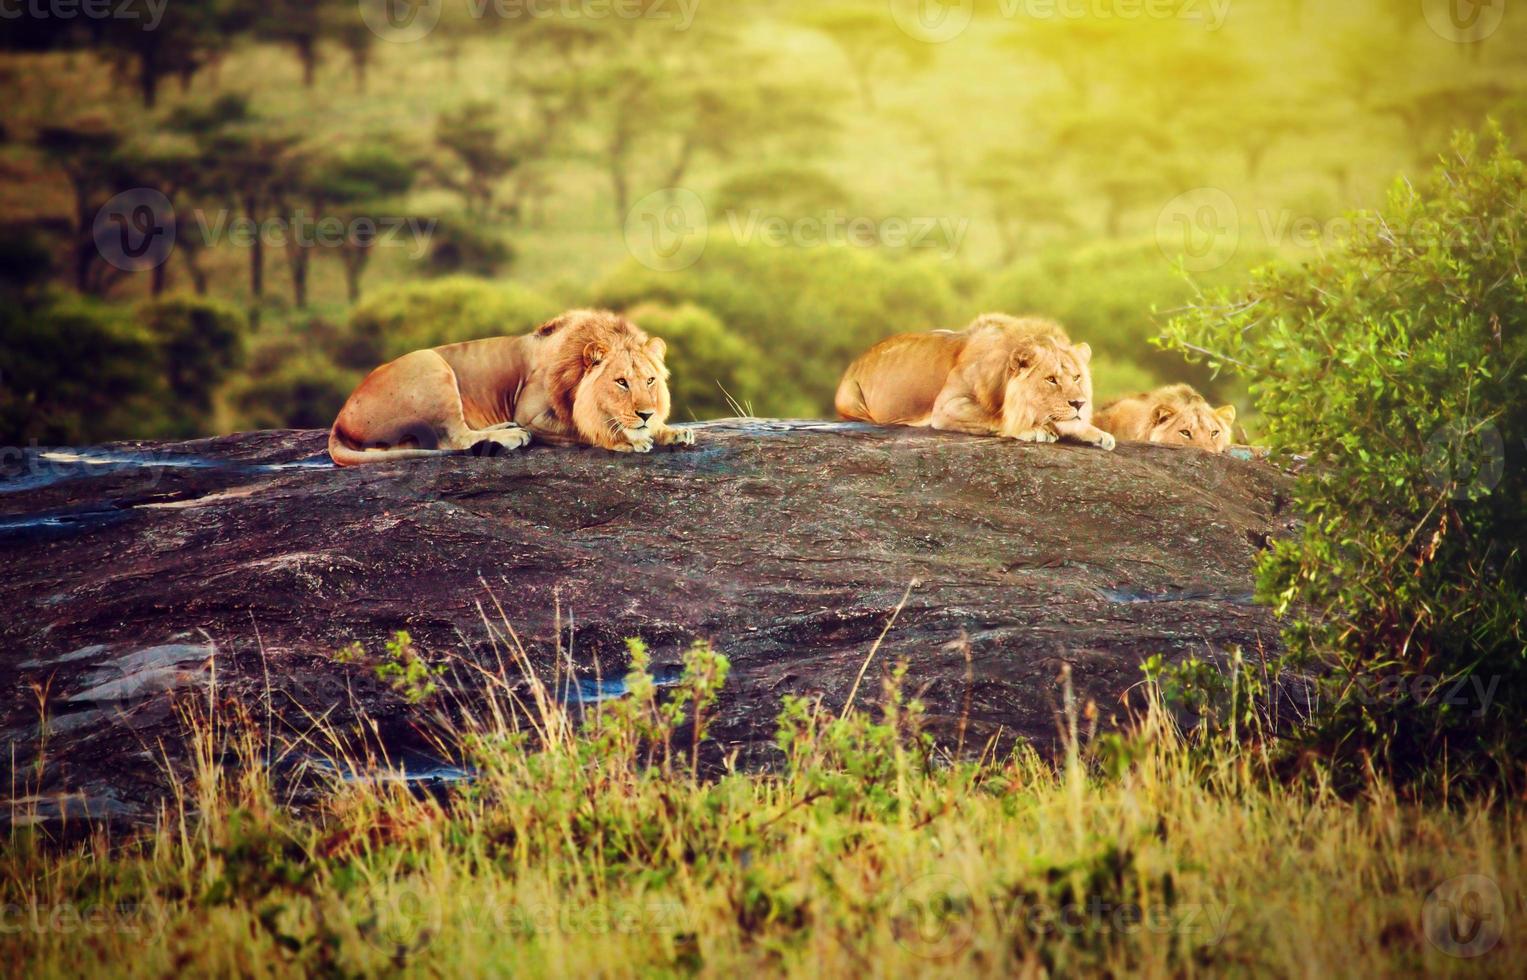 Lions on rocks on savanna at sunset. Safari in Serengeti, Tanzania, Africa photo